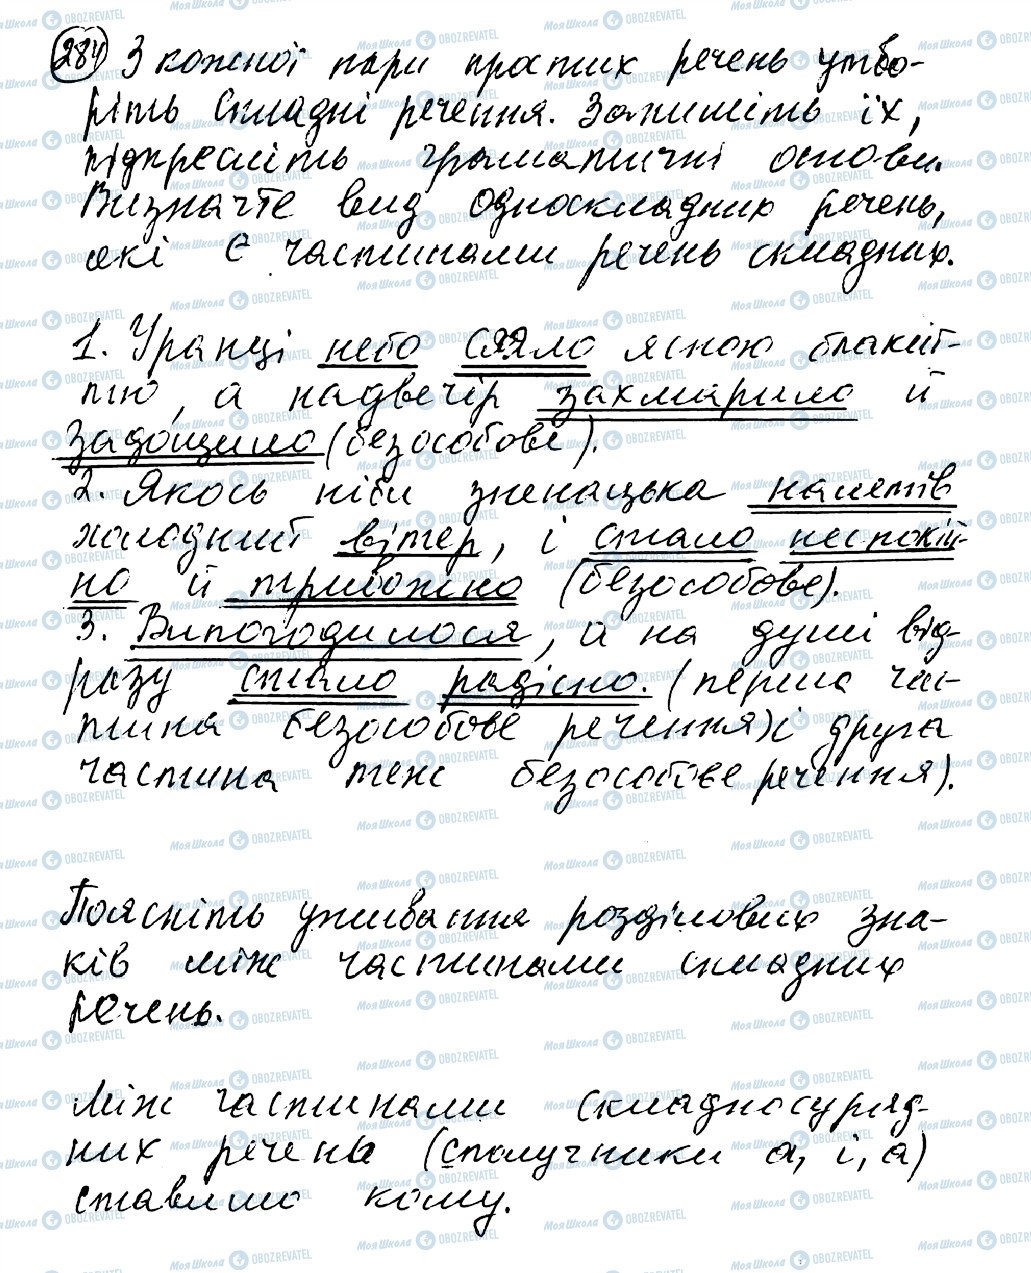 ГДЗ Українська мова 8 клас сторінка 284